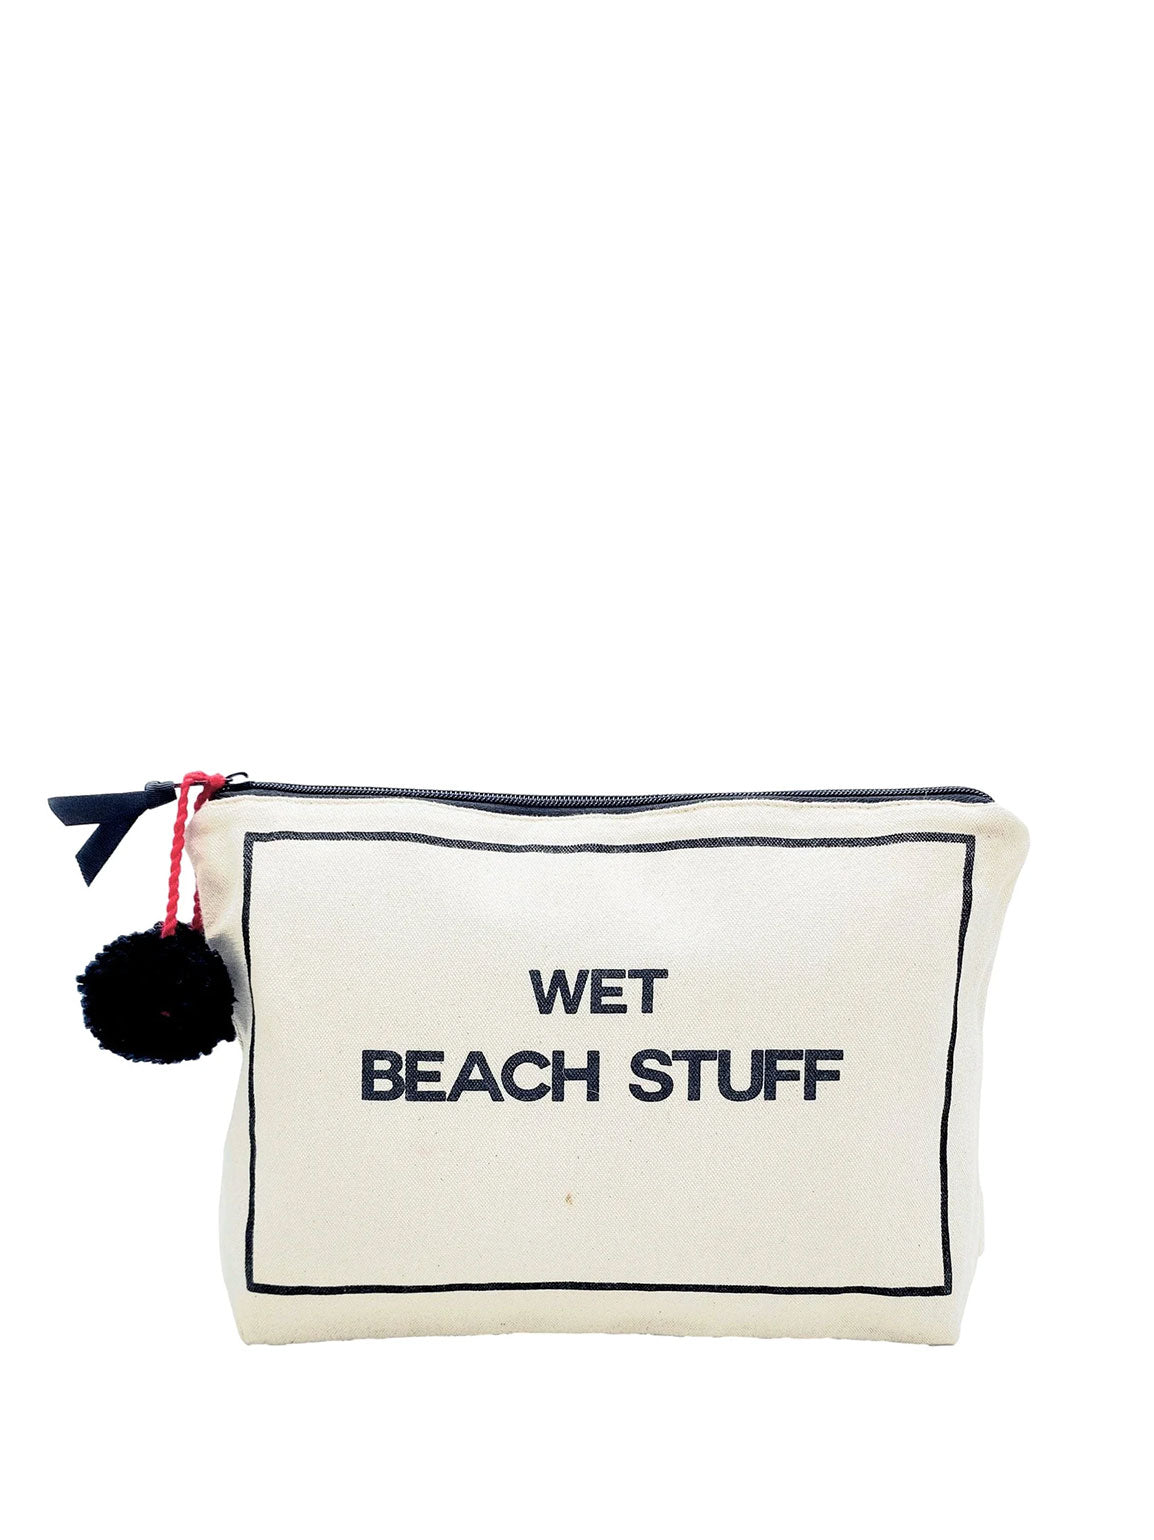 Wet Beach Stuff Pouch